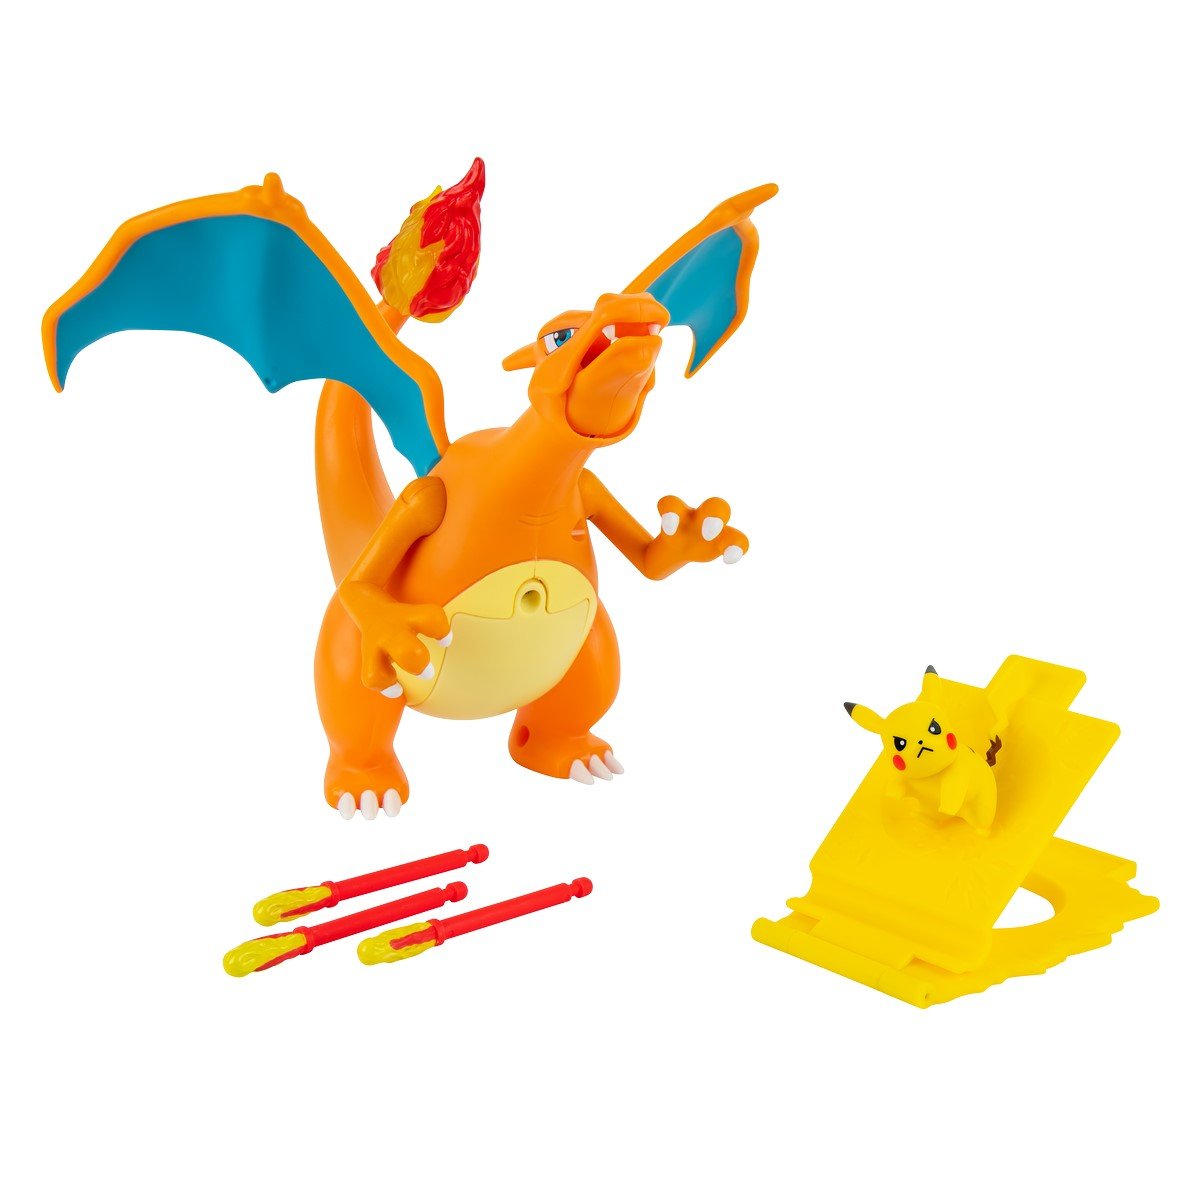 Figurine Pokémon Pikachu Mew et dracaufeu sortent de la game boy - Boutique  Pokemon